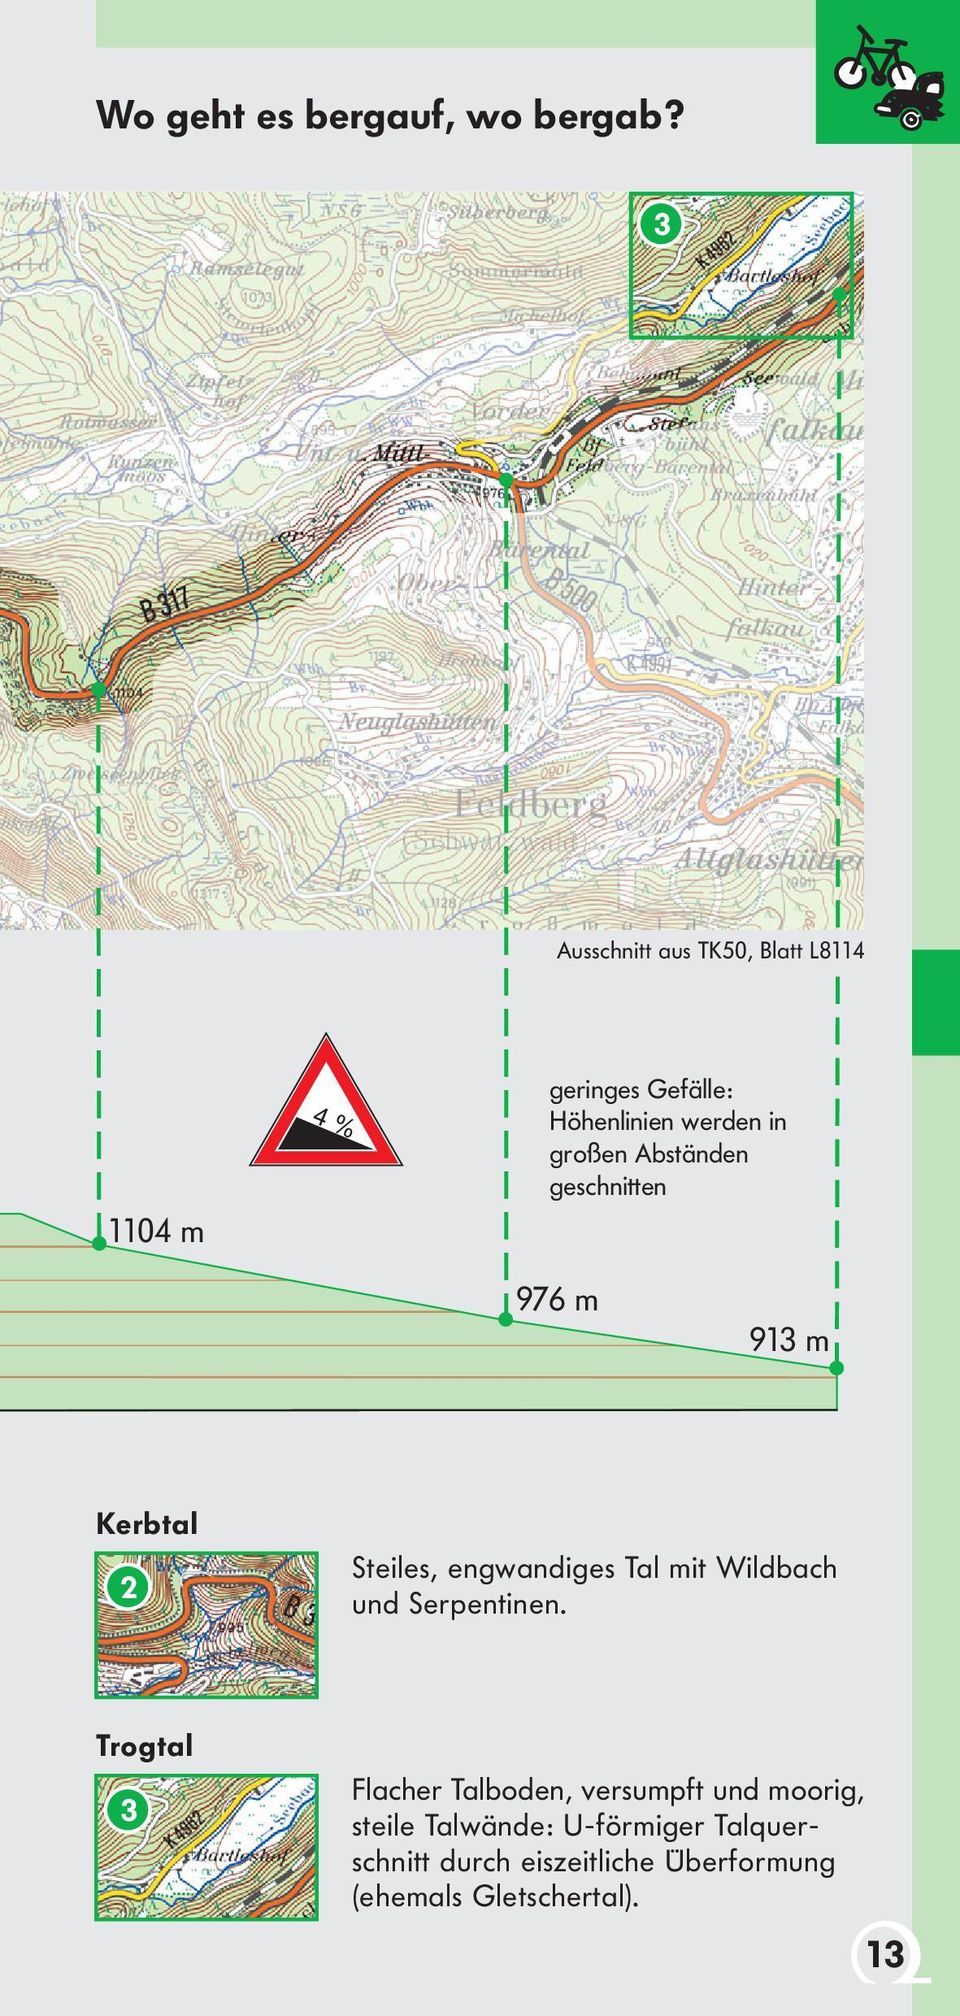 Abständen geschnitten 976 m 913 m Kerbtal 2 Steiles, engwandiges Tal mit Wildbach und